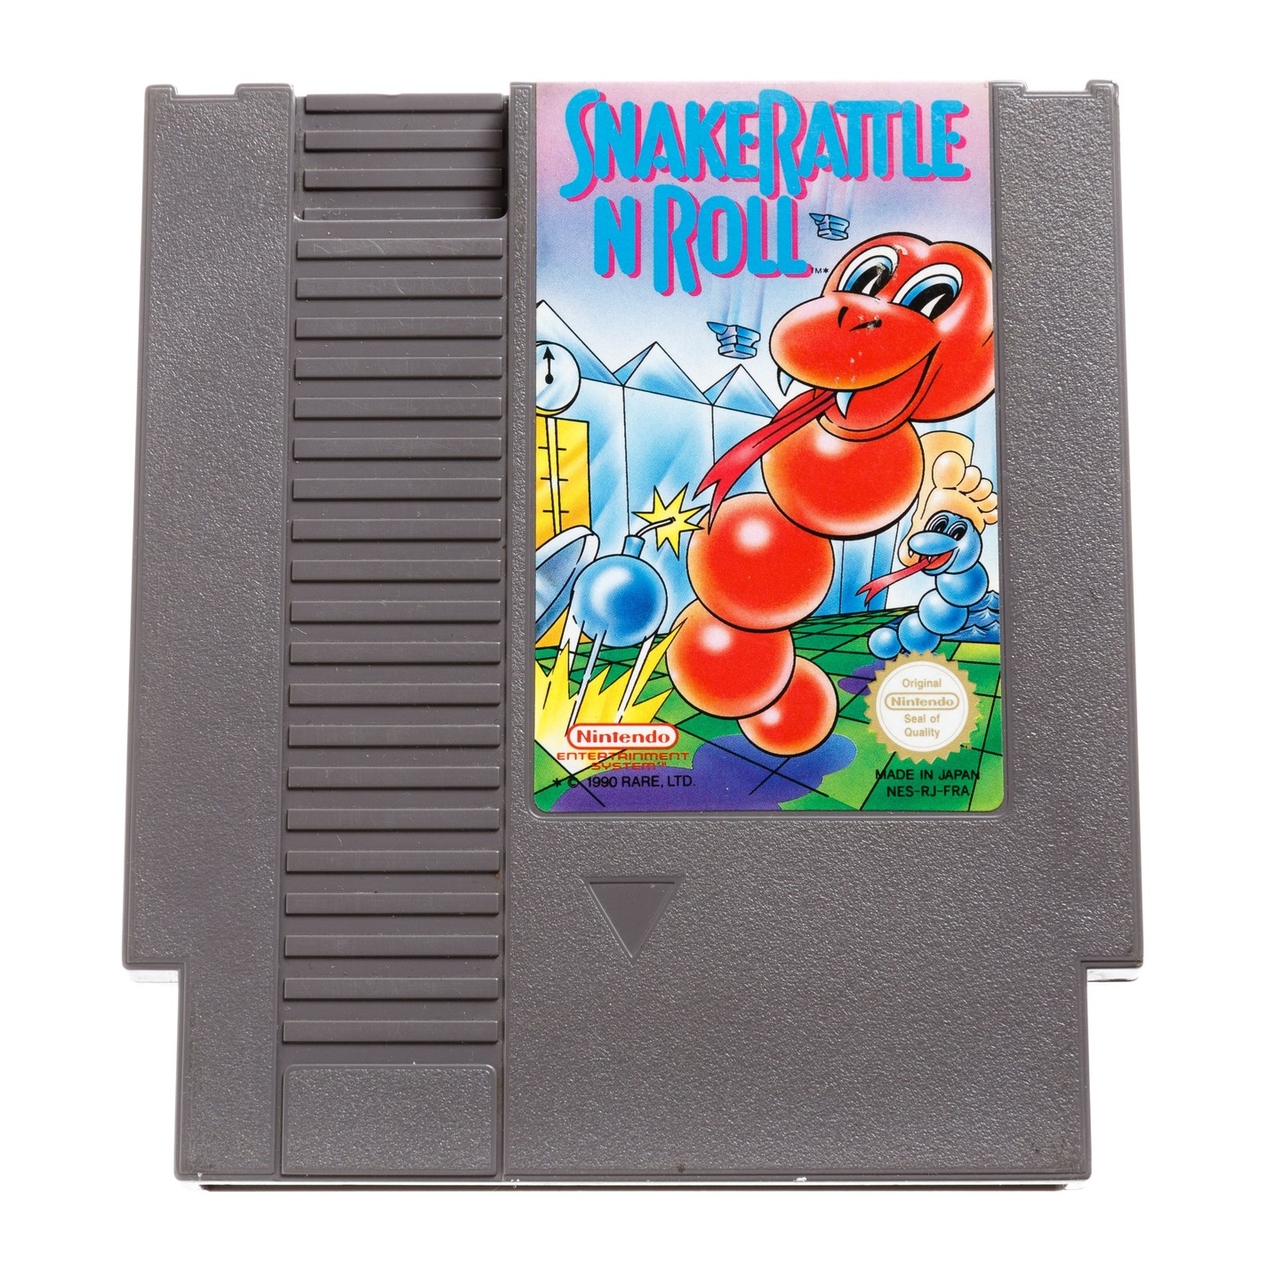 Snake Rattle N Roll | Nintendo NES Games | RetroNintendoKopen.nl